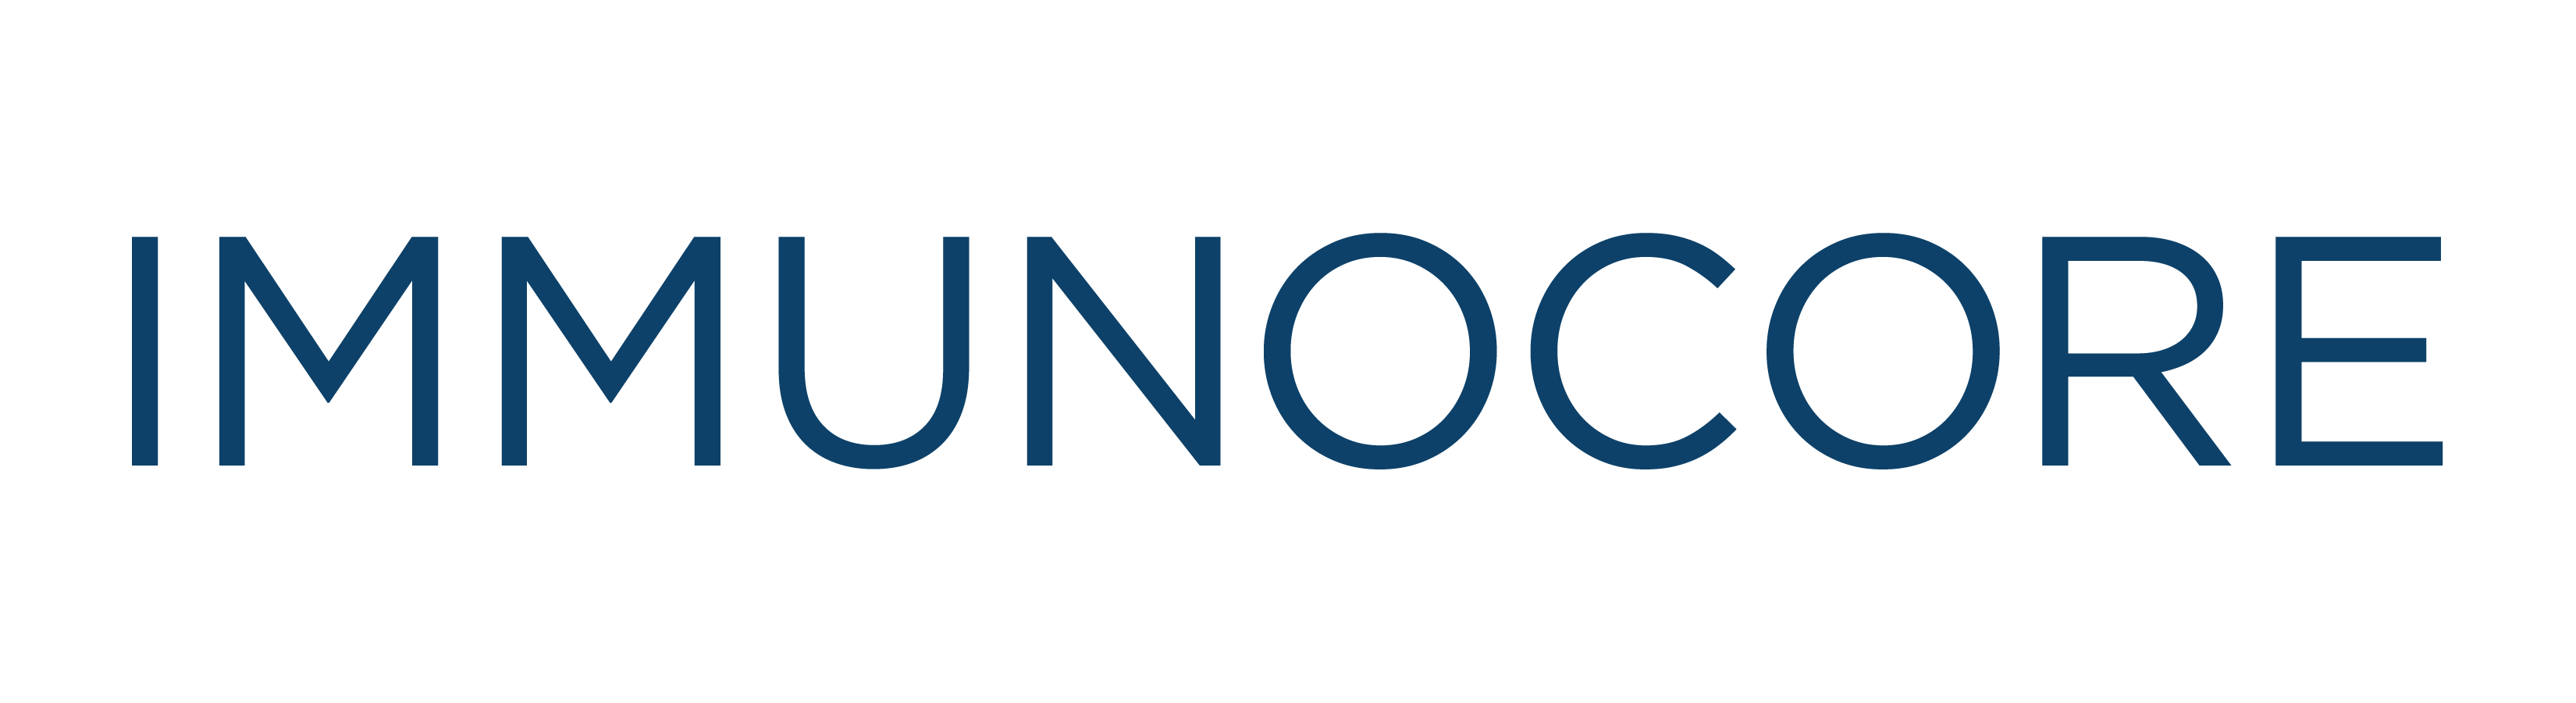 Immunocore_Logo_2018.png